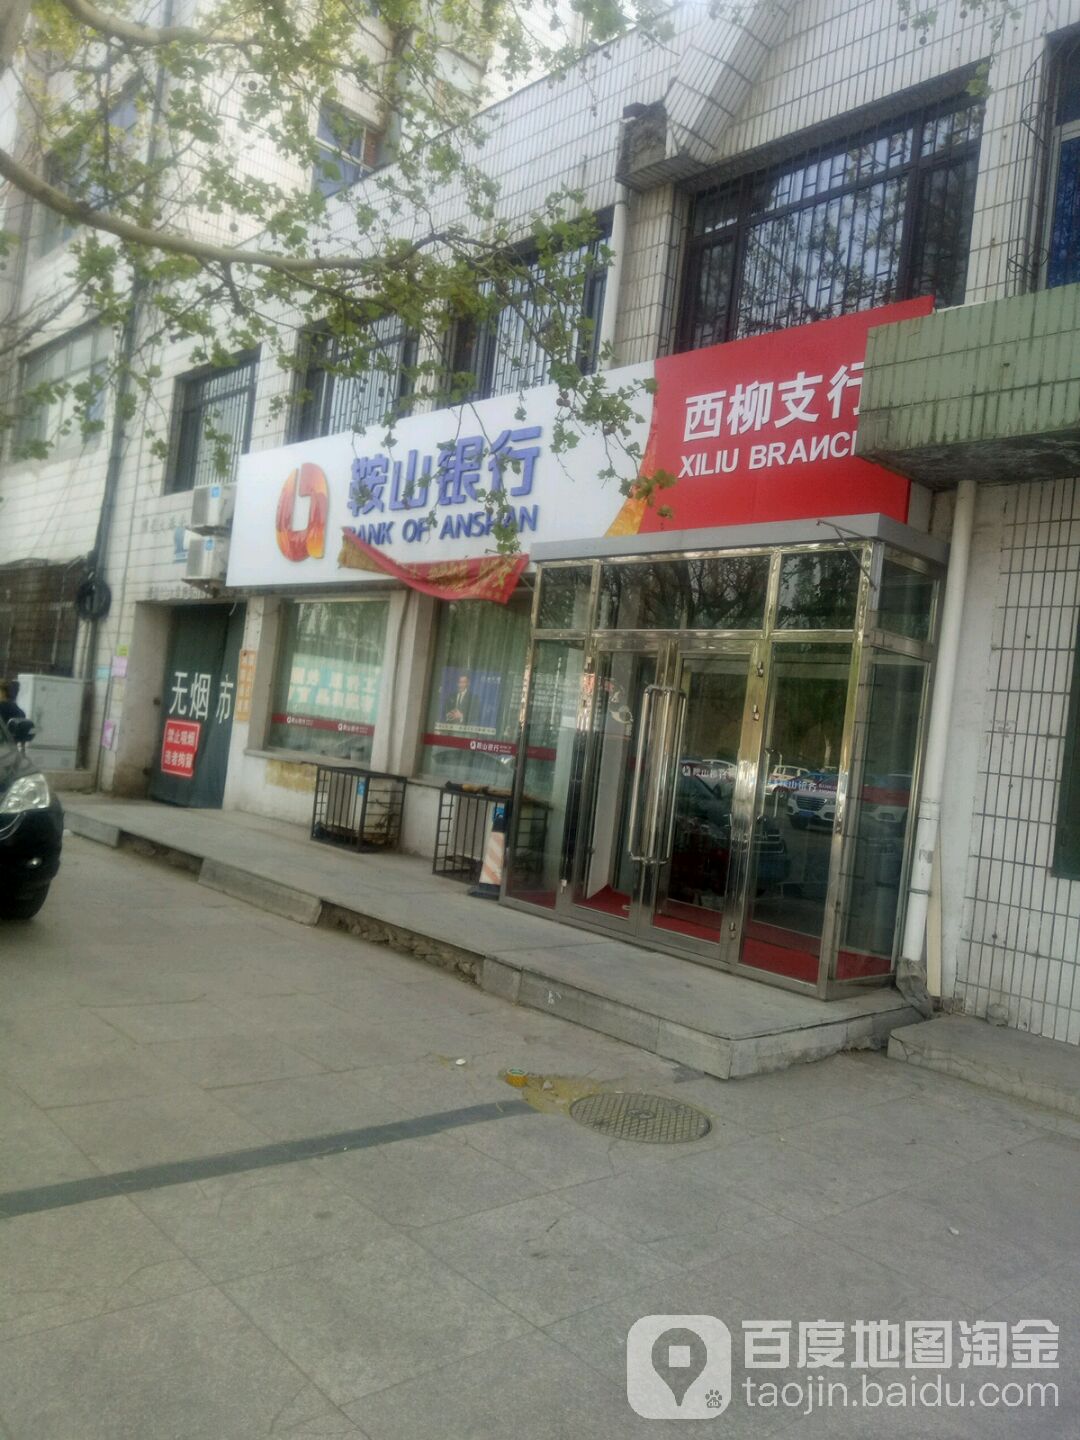 鞍山銀行(西柳支行)